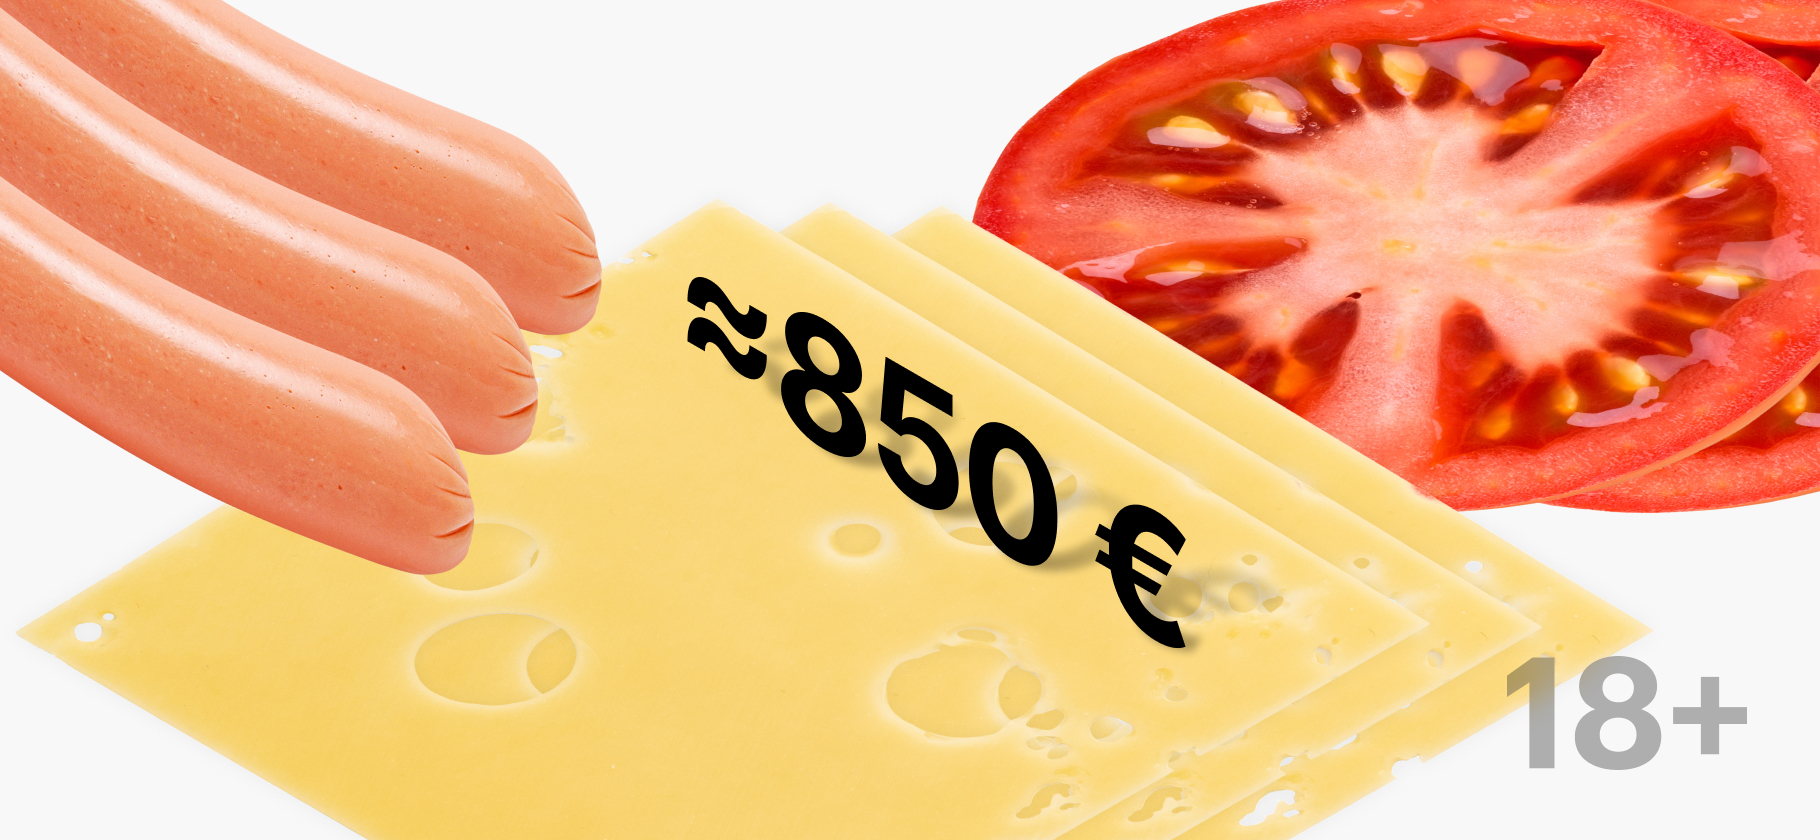 Лягушачьи лапки дома и пиво в офисе: мы тратим на еду в Германии в среднем 850 € в месяц